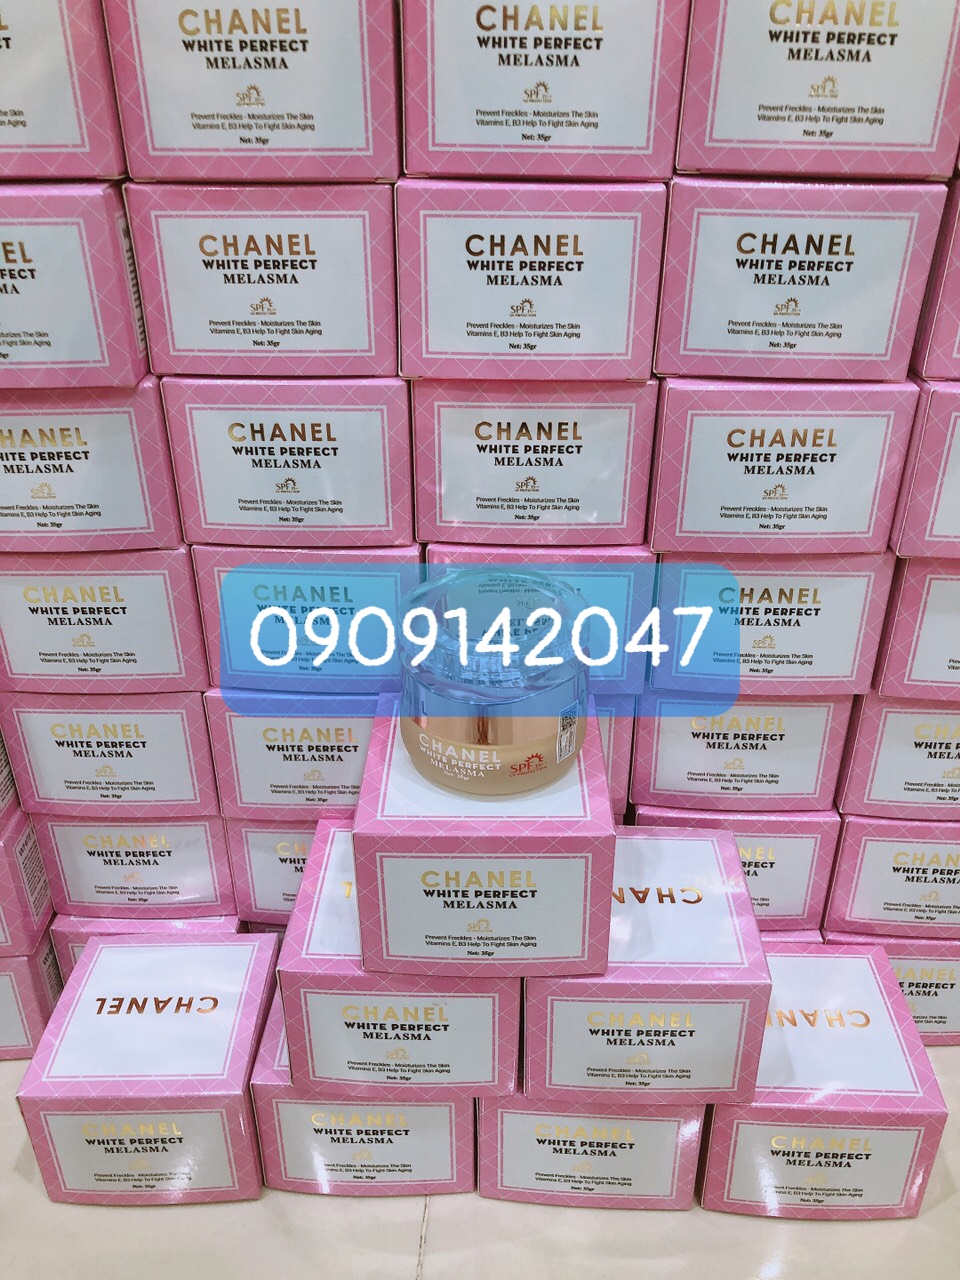 Kem dưỡng Chanel Le Lift Creme de Nuit Night Cream 5ml